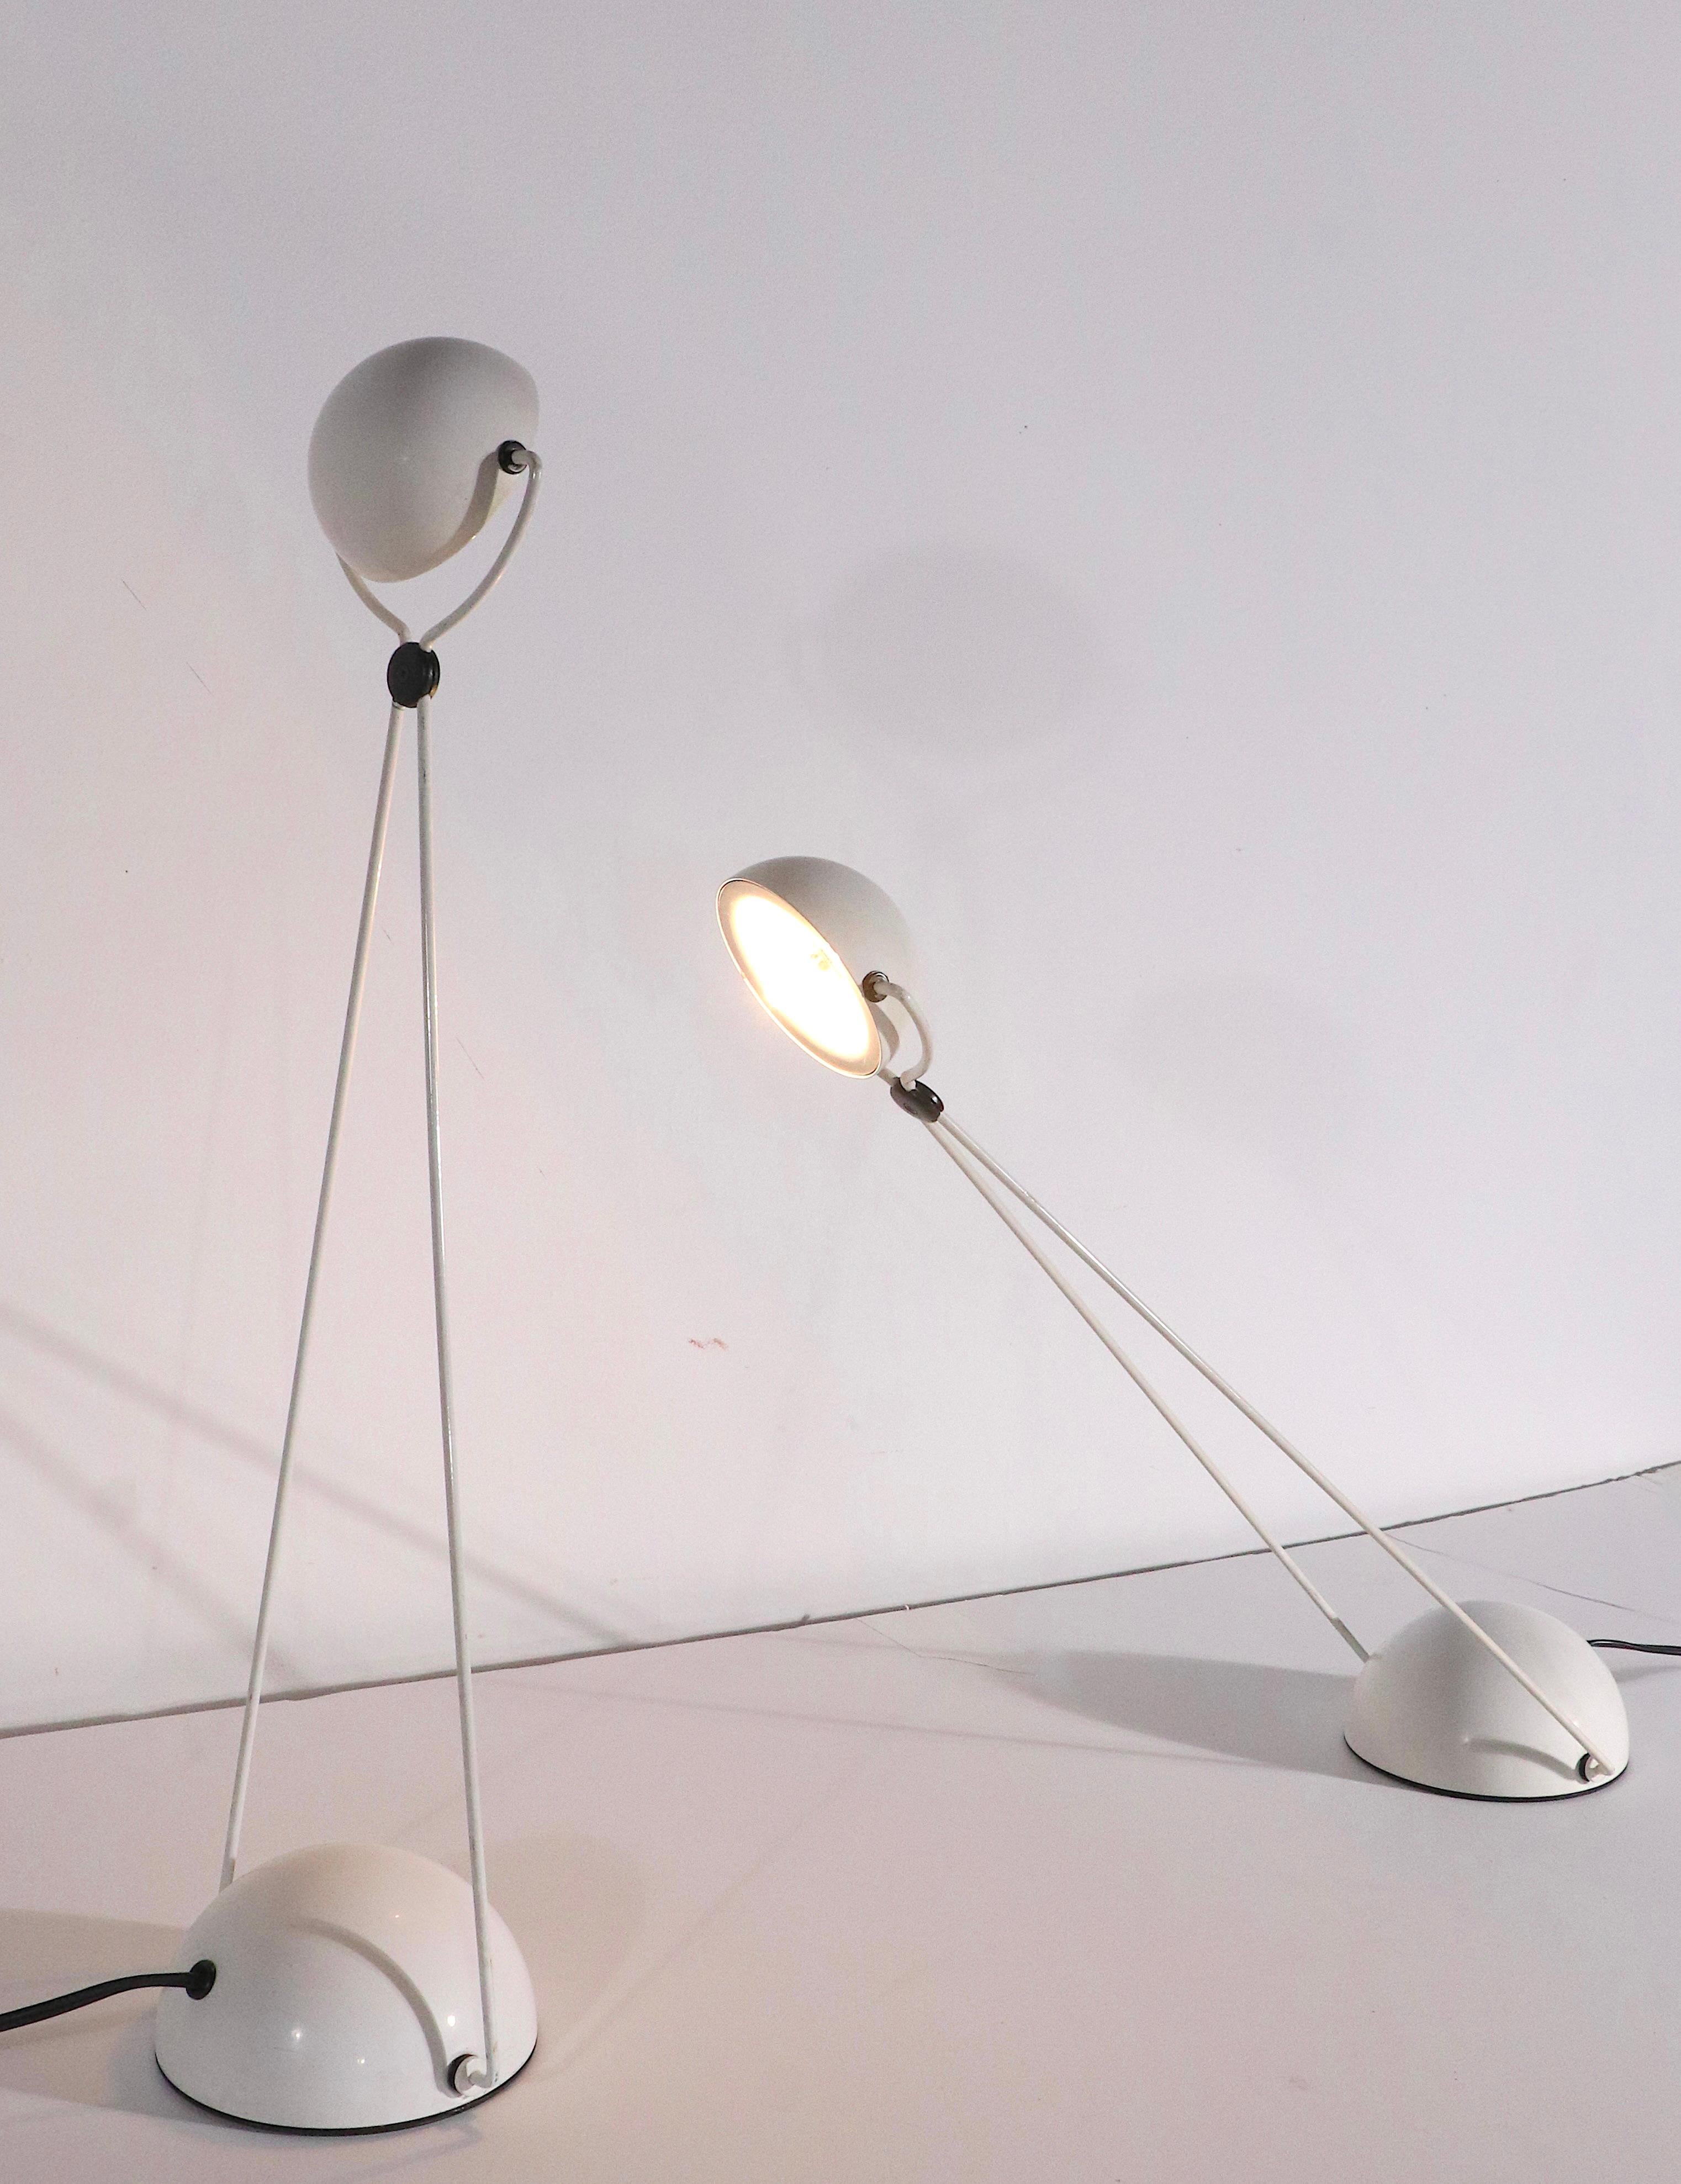 Paire de lampes de bureau réglables de style postmoderne, conçues par Stefano Cevoli. Fabriquées à Milan, Italie, vers les années 1980. Exécuté dans un style graphique blanc et noir, sophistiqué, architectural et vogueur. 
 Les lampes sont en bon